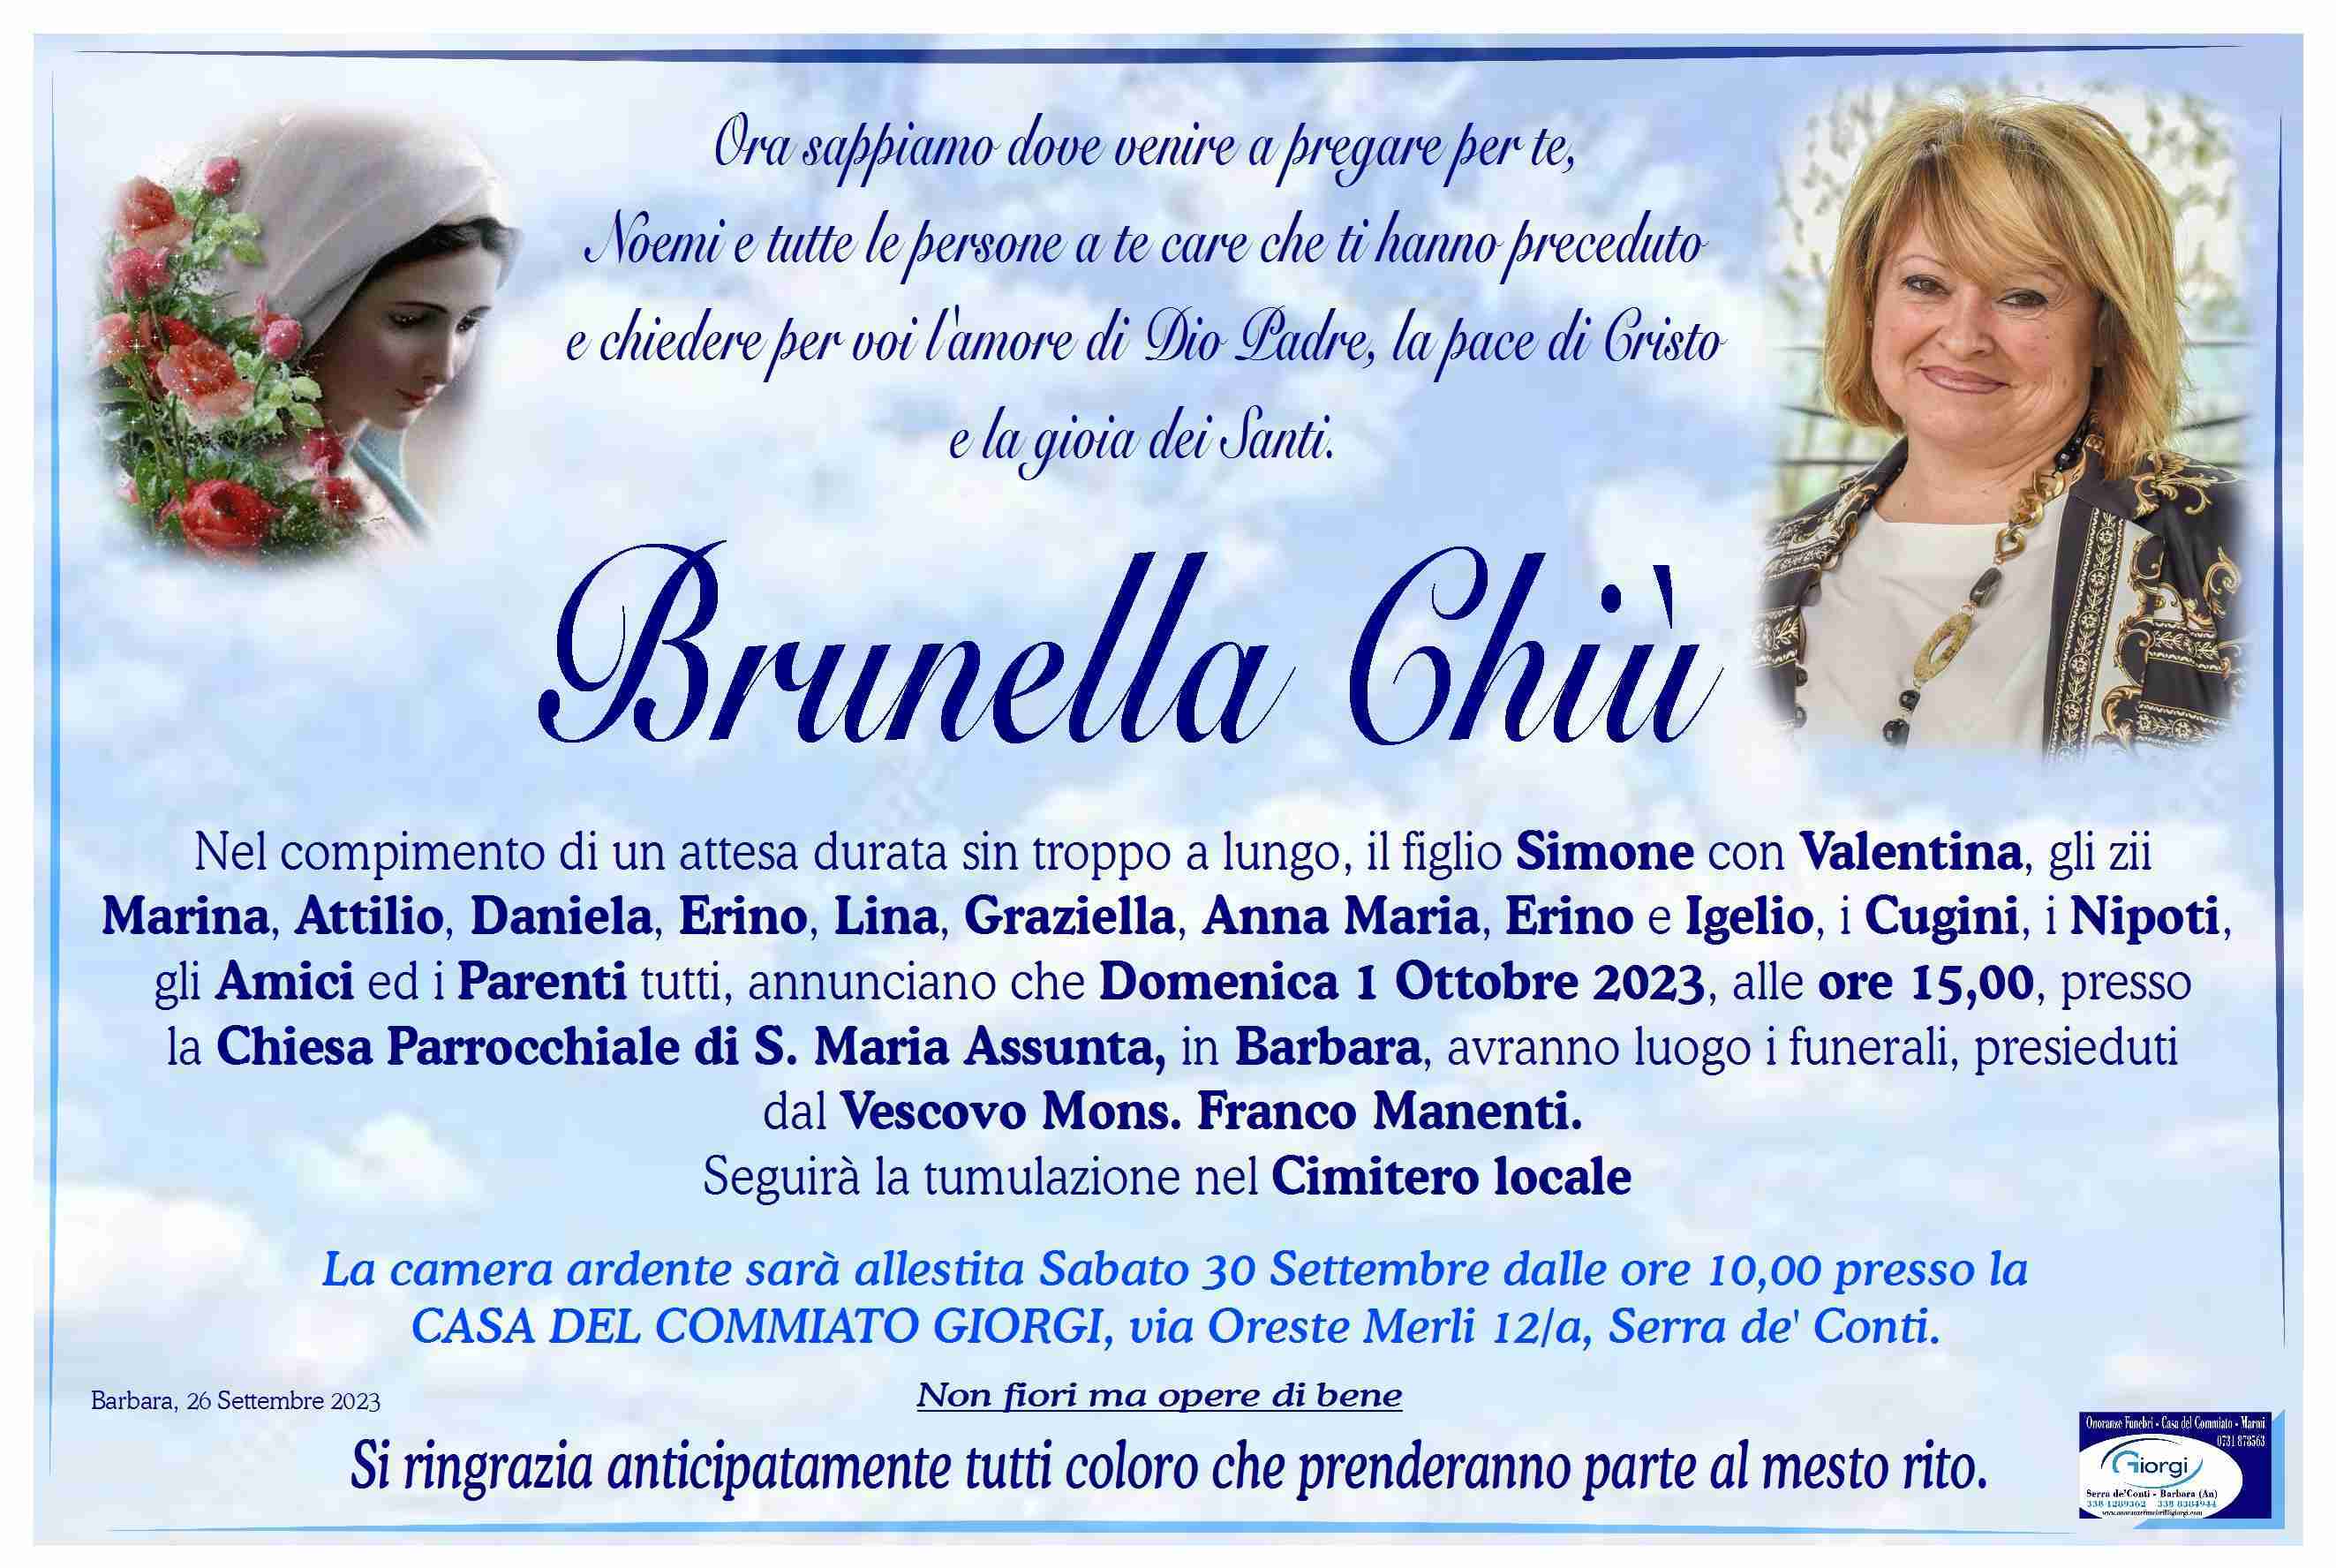 Brunella Chiù